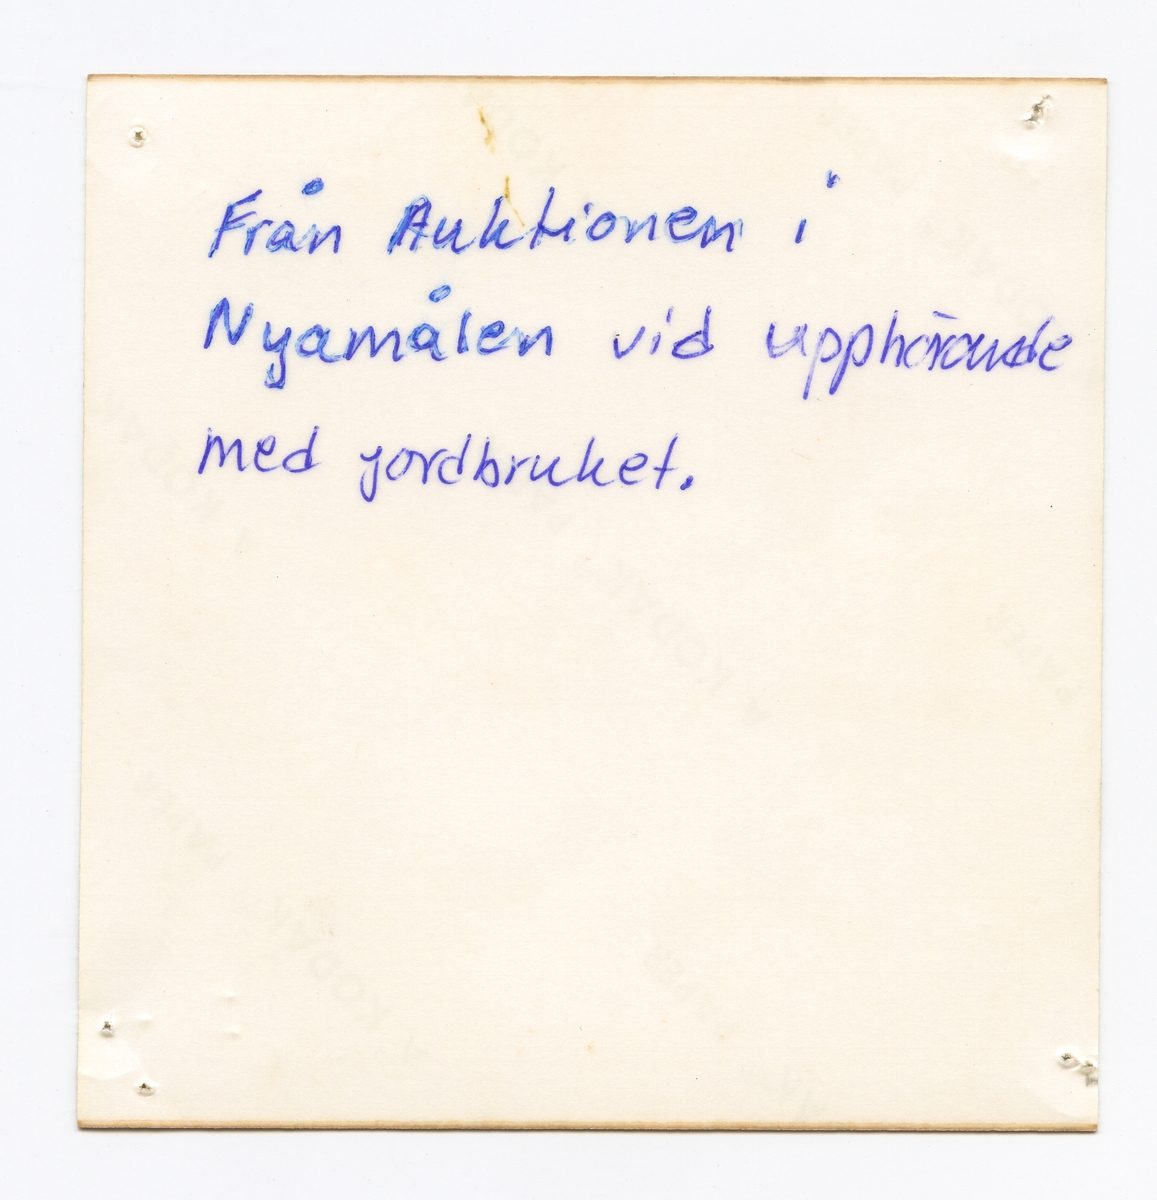 Auktion på gården Nyamålen i Säby socken, Jönköpings län, den 27 maj 1972. På bilden syns en ladugårdsfasad framför vilken en grupp människor står, och i förgrunden en man hållandes en häst. En auktionsutropare till vänster i bild.

Dåvarande ägare av gården Nyamålen upphörde vid denna tid med jordbruket (syskonen Gustafsson), men det drevs vidare av andra lantbrukare.